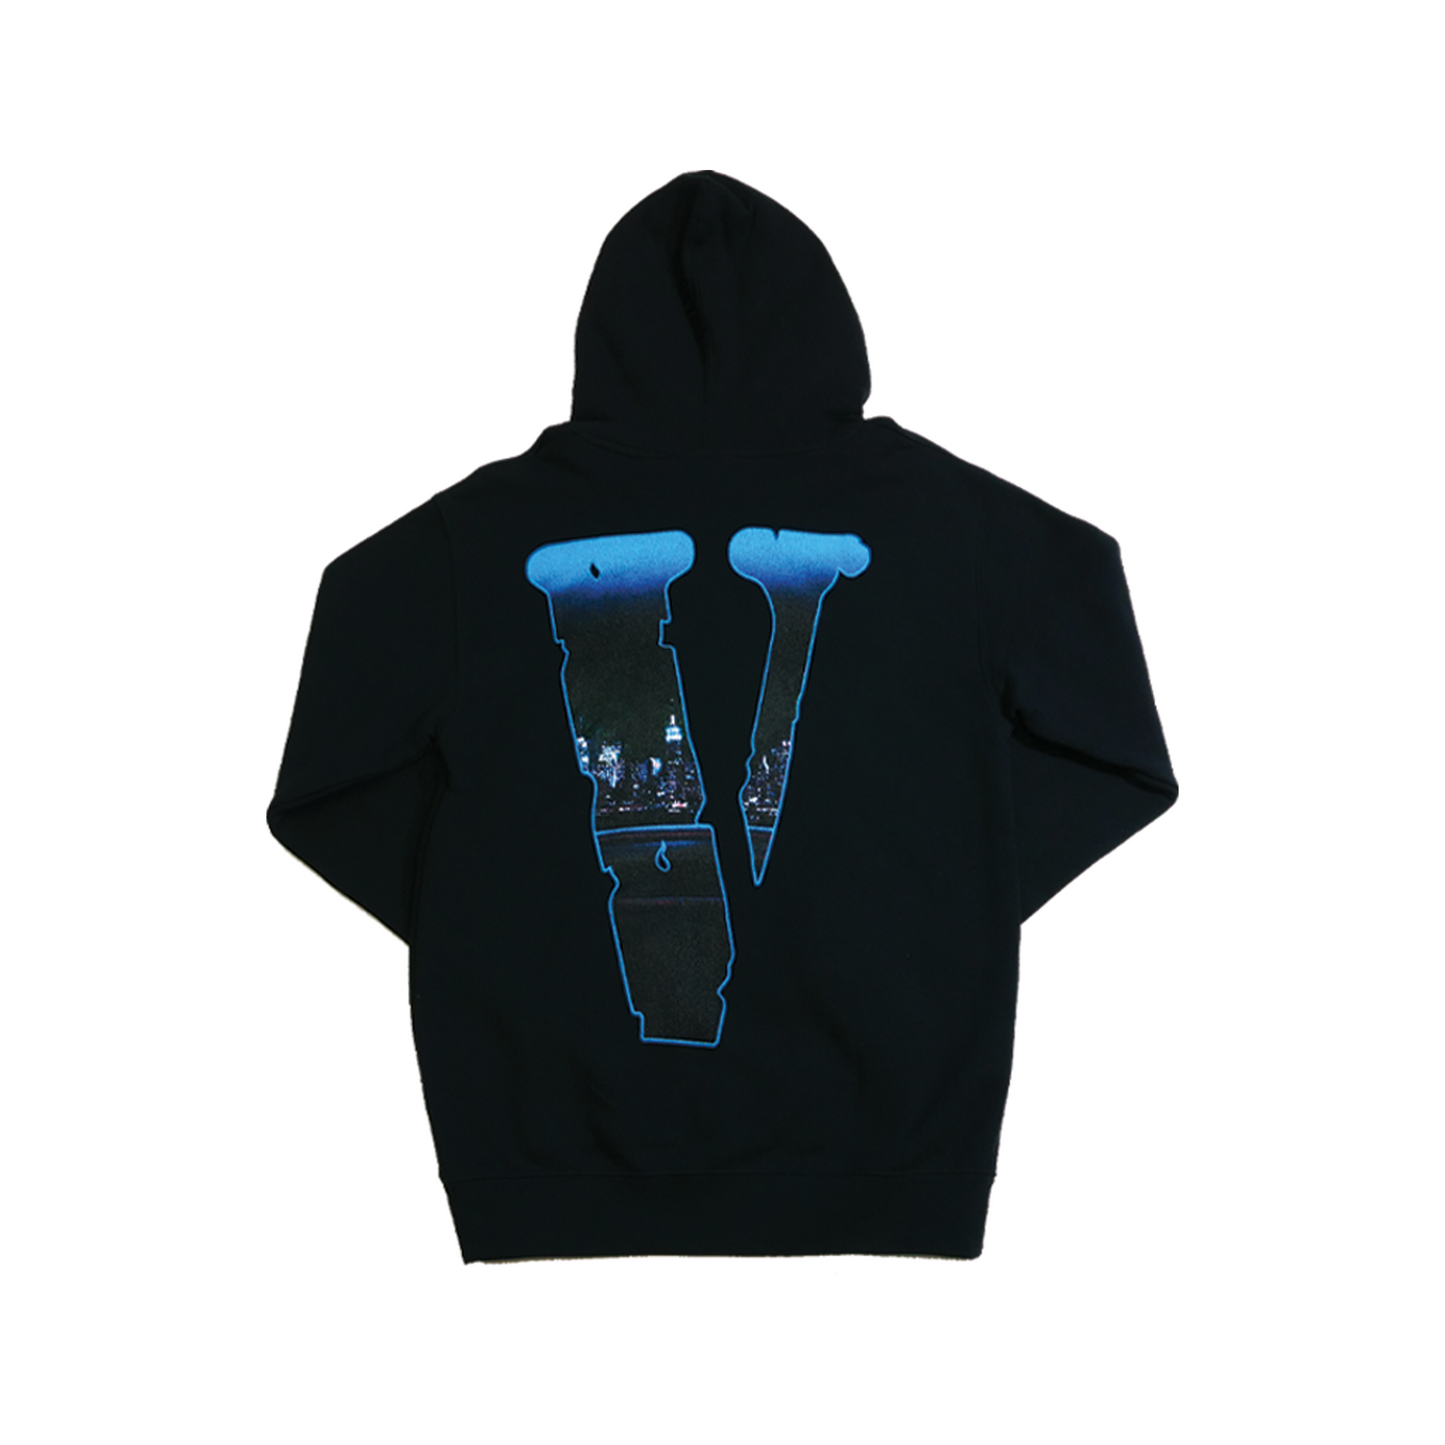 Pop smoke “Armed n Dangerous” VLONE hoodie